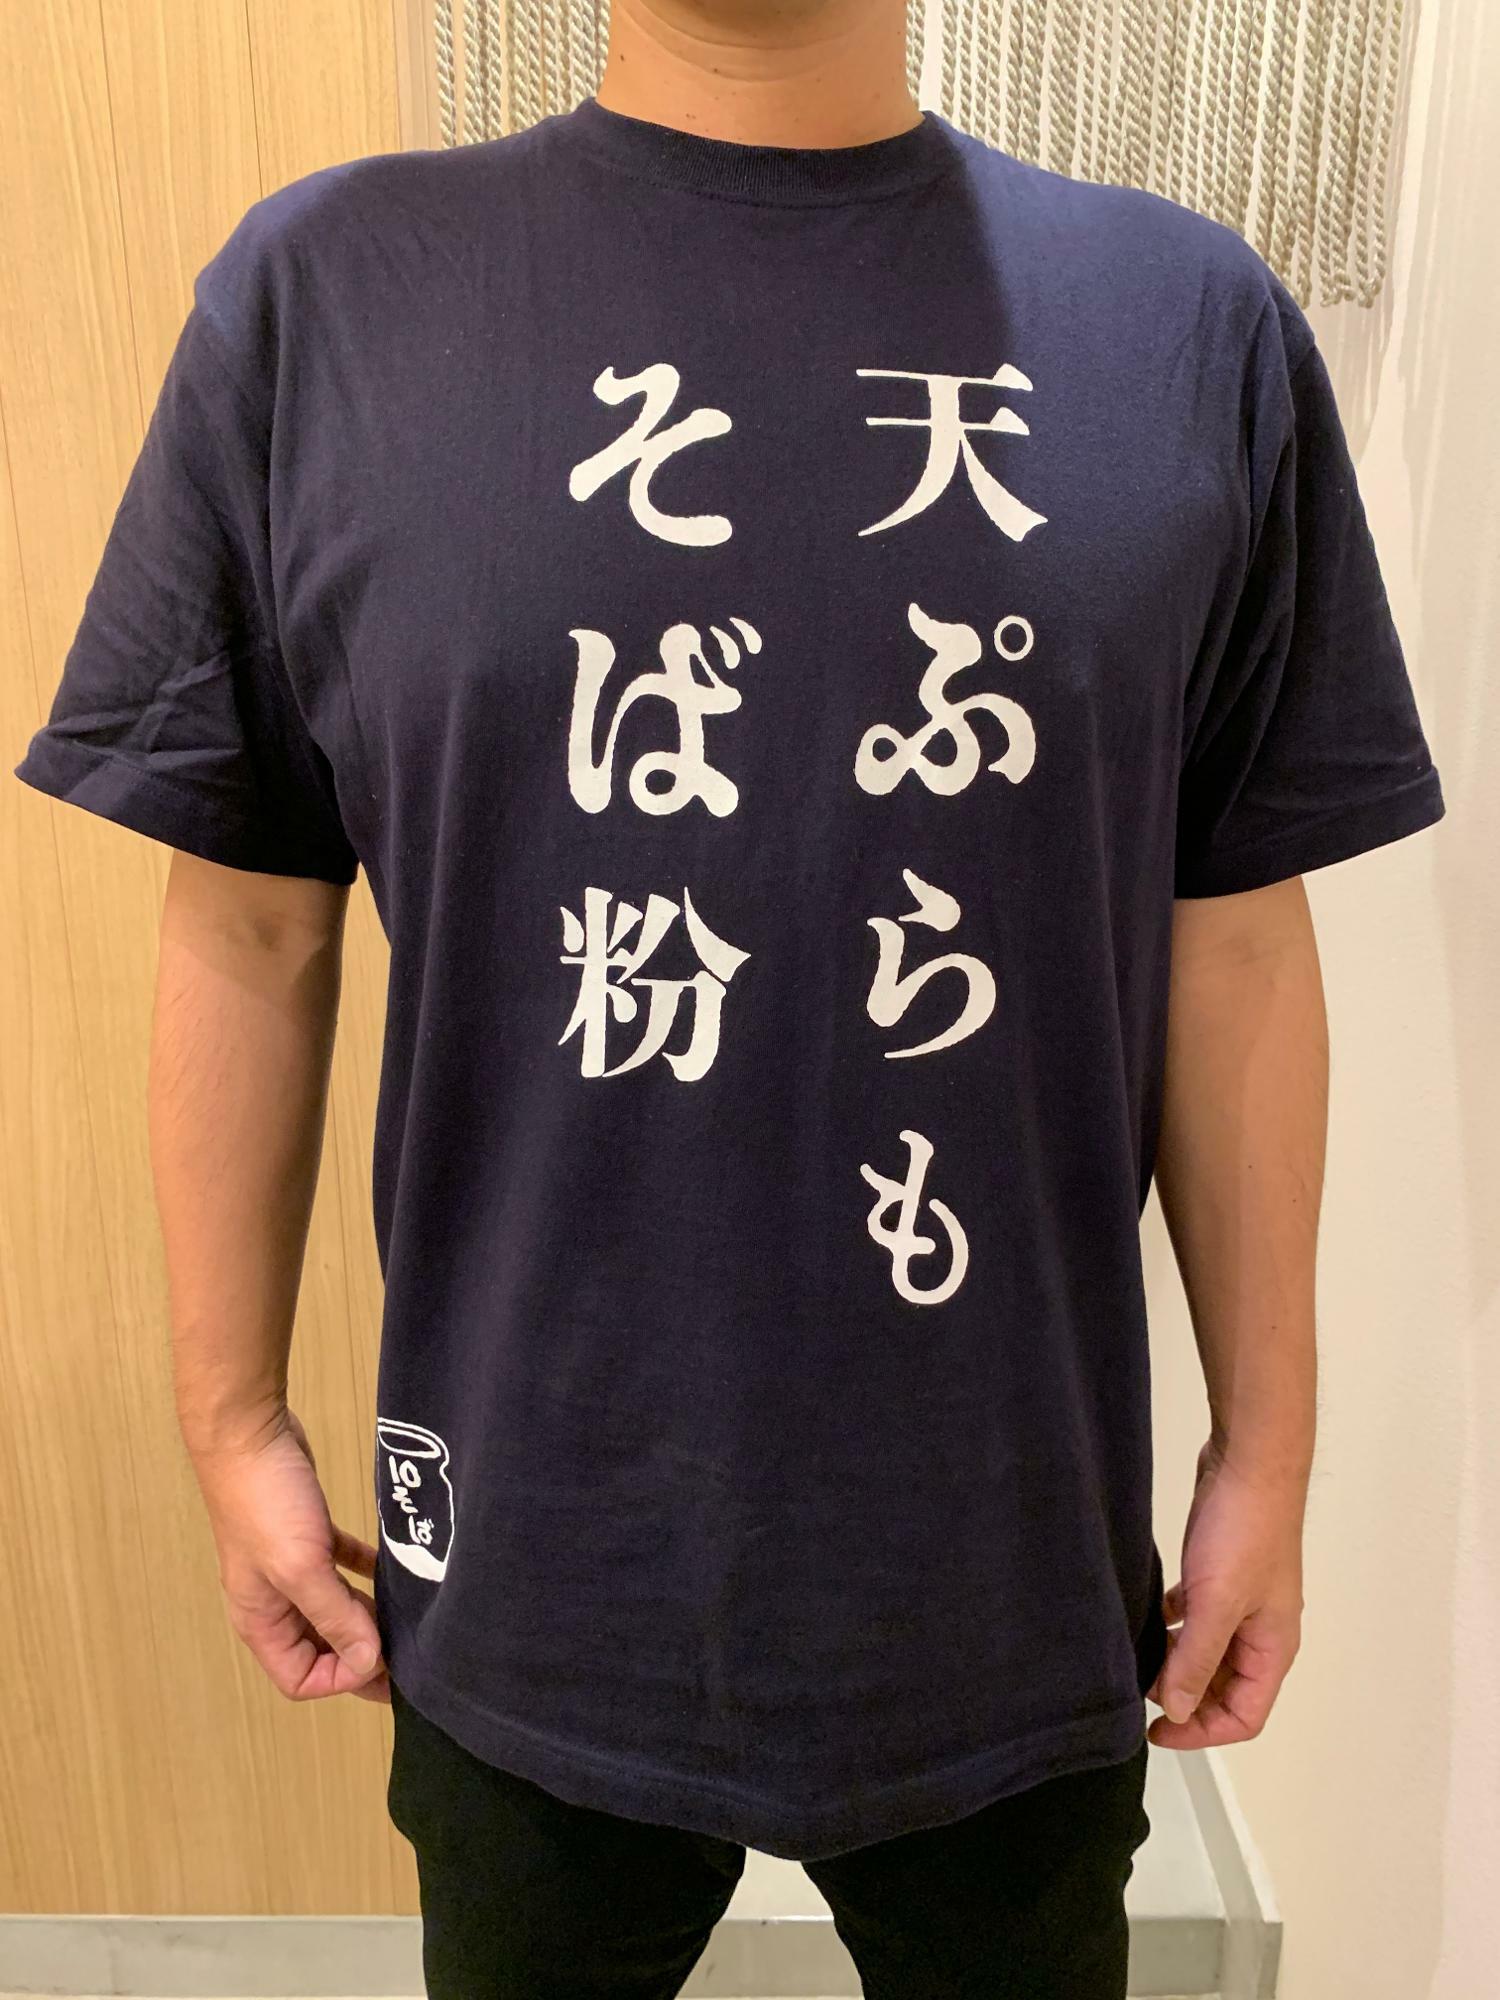 スタッフのTシャツの表は「天ぷらもそば粉」の文字